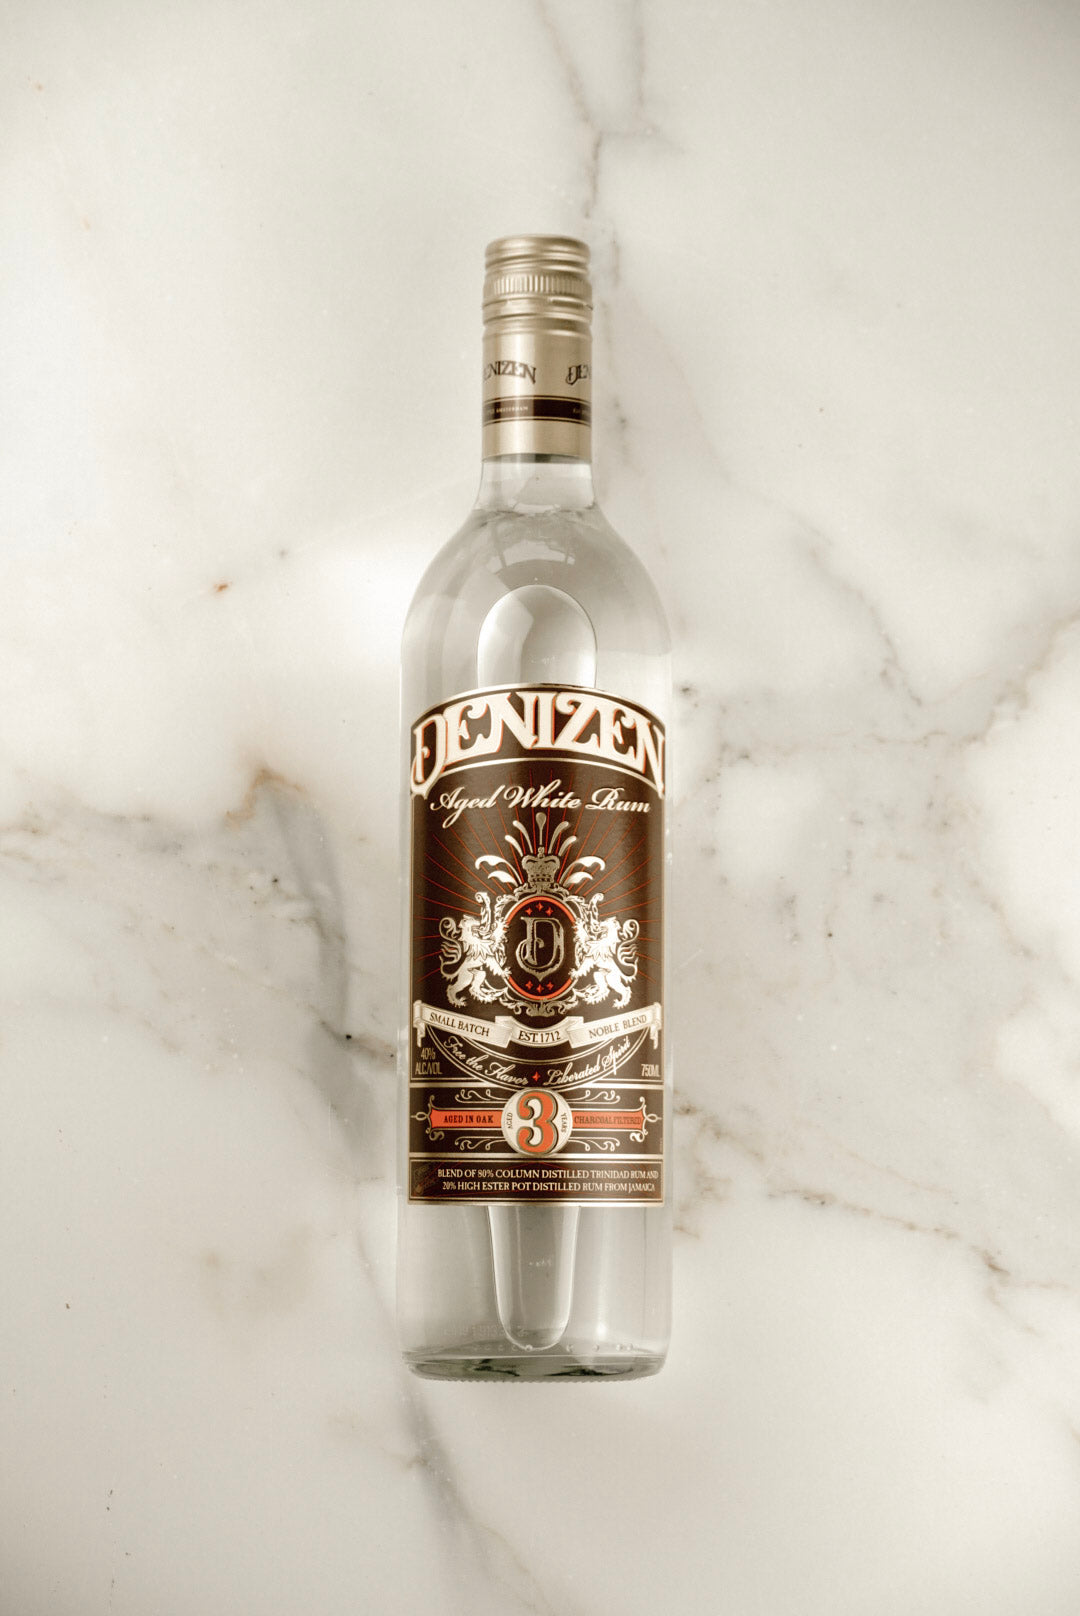 Denizen, 3 Years Old Aged White Rum 750ml